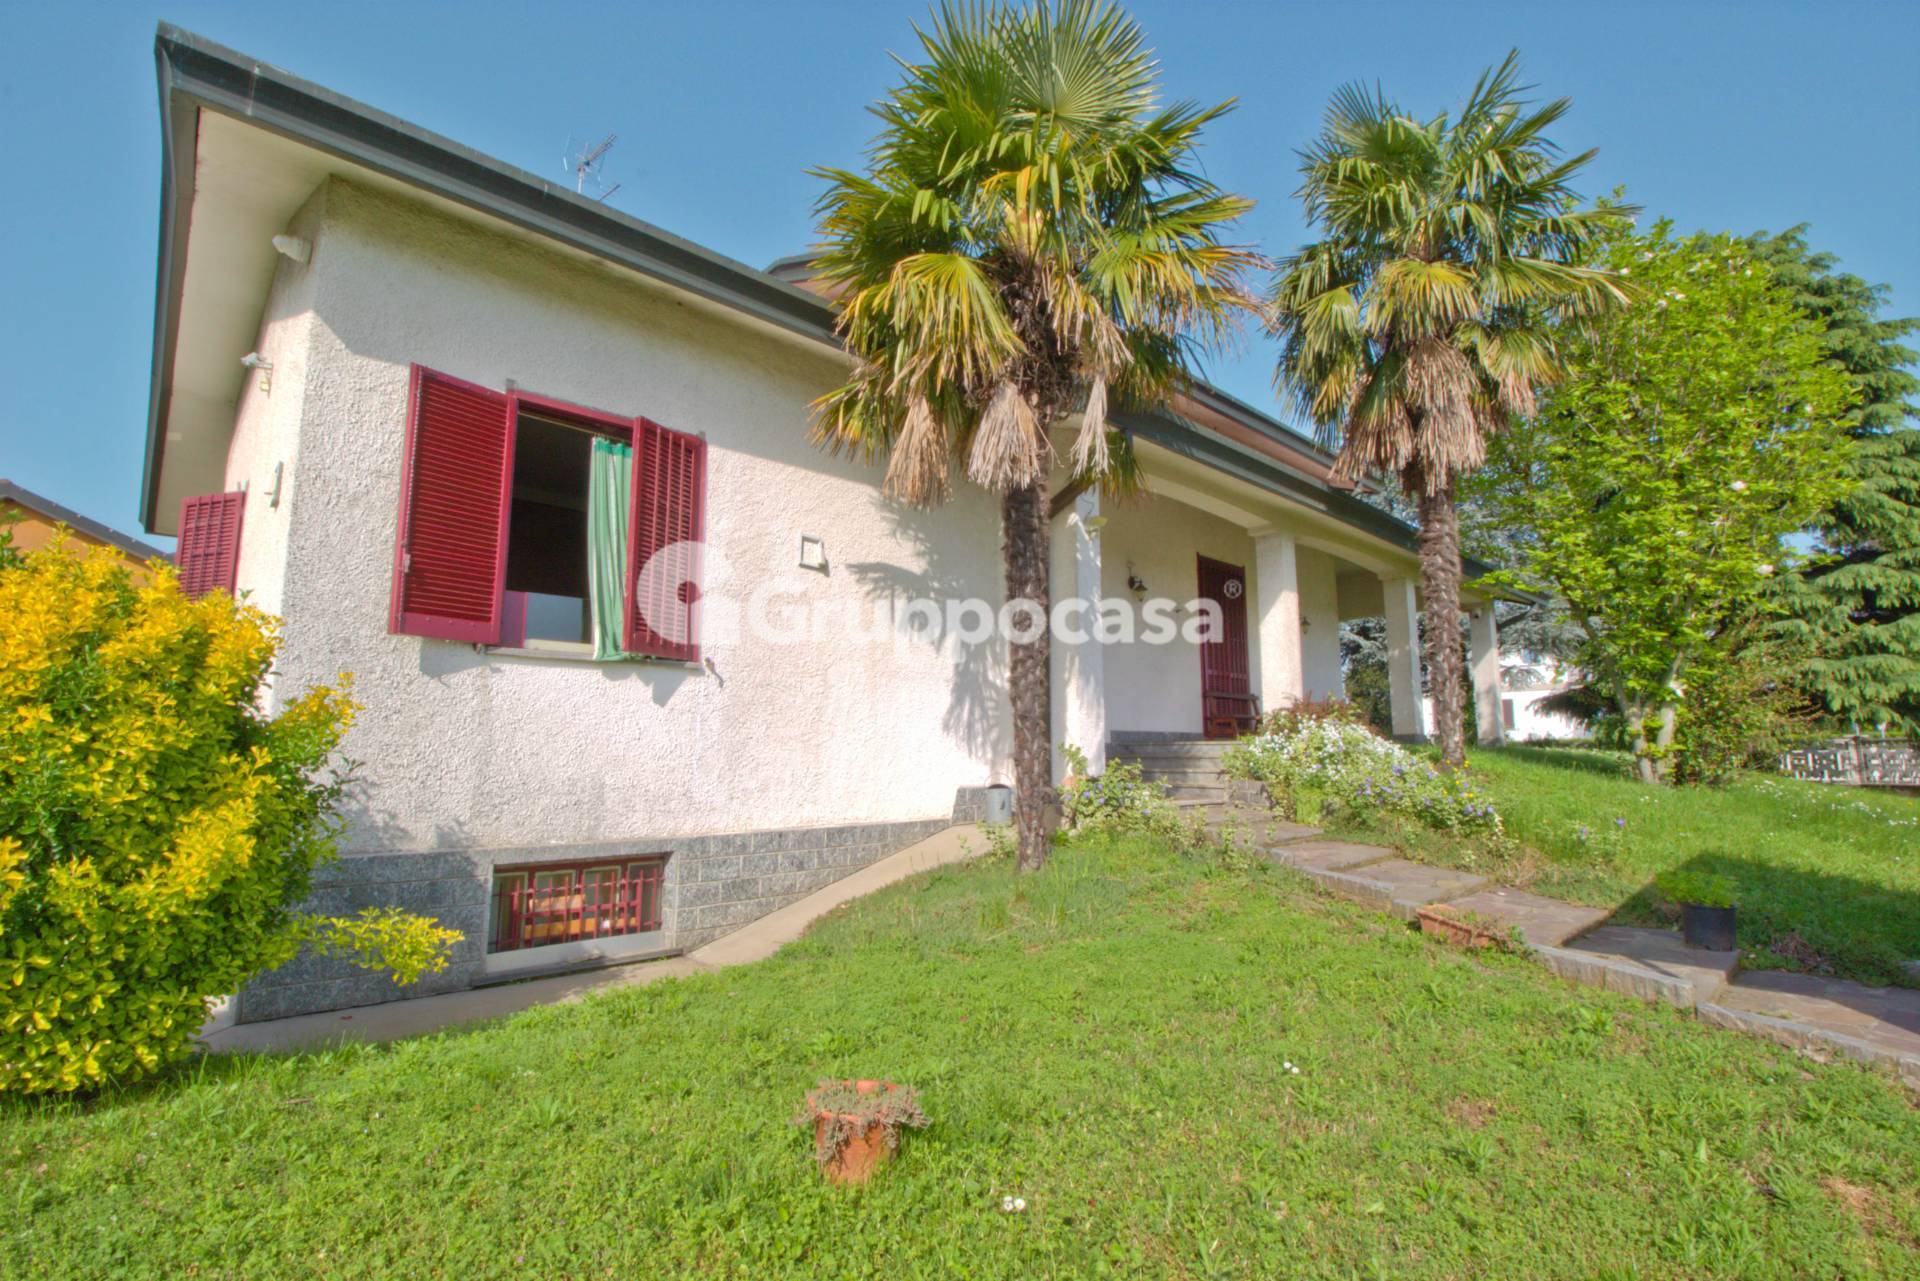 Villa in vendita a Marcallo con Casone, 4 locali, prezzo € 335.000 | PortaleAgenzieImmobiliari.it